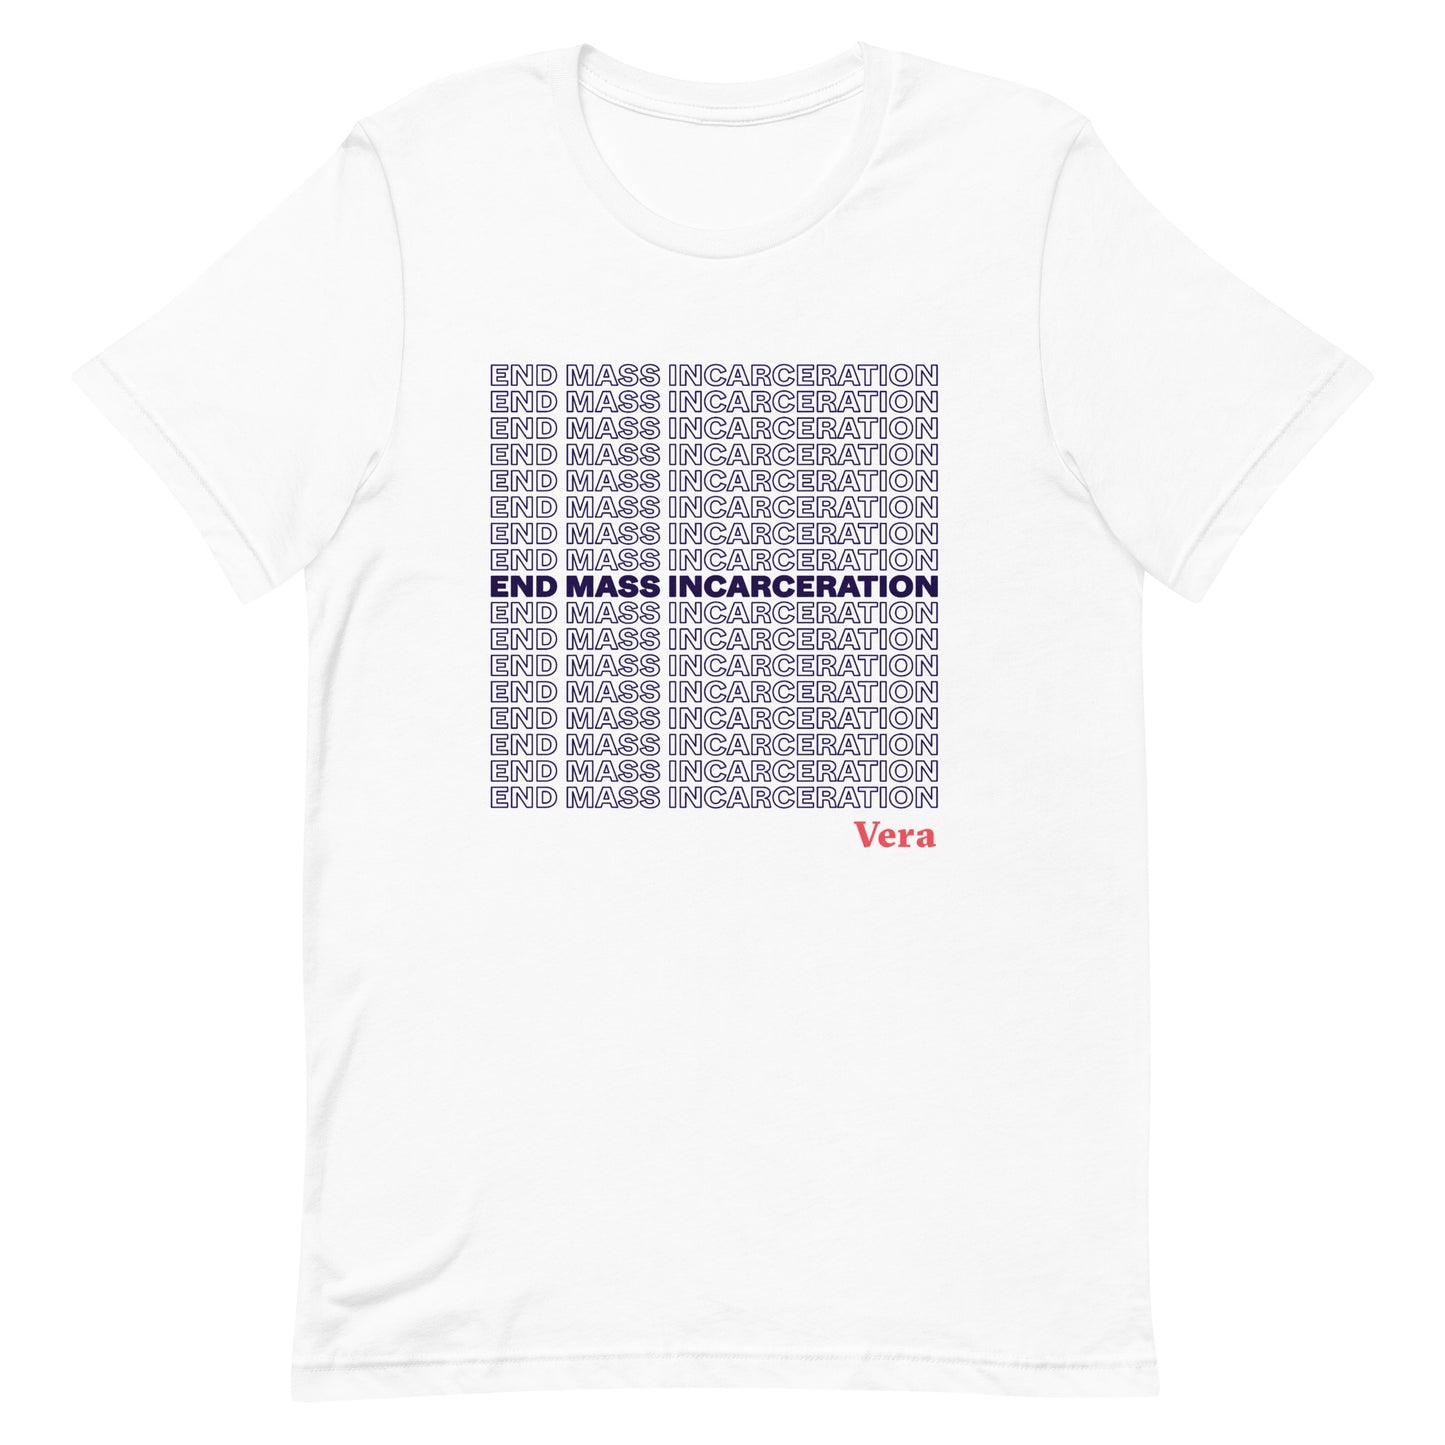 "End Mass Incarceration" Tee Shirt